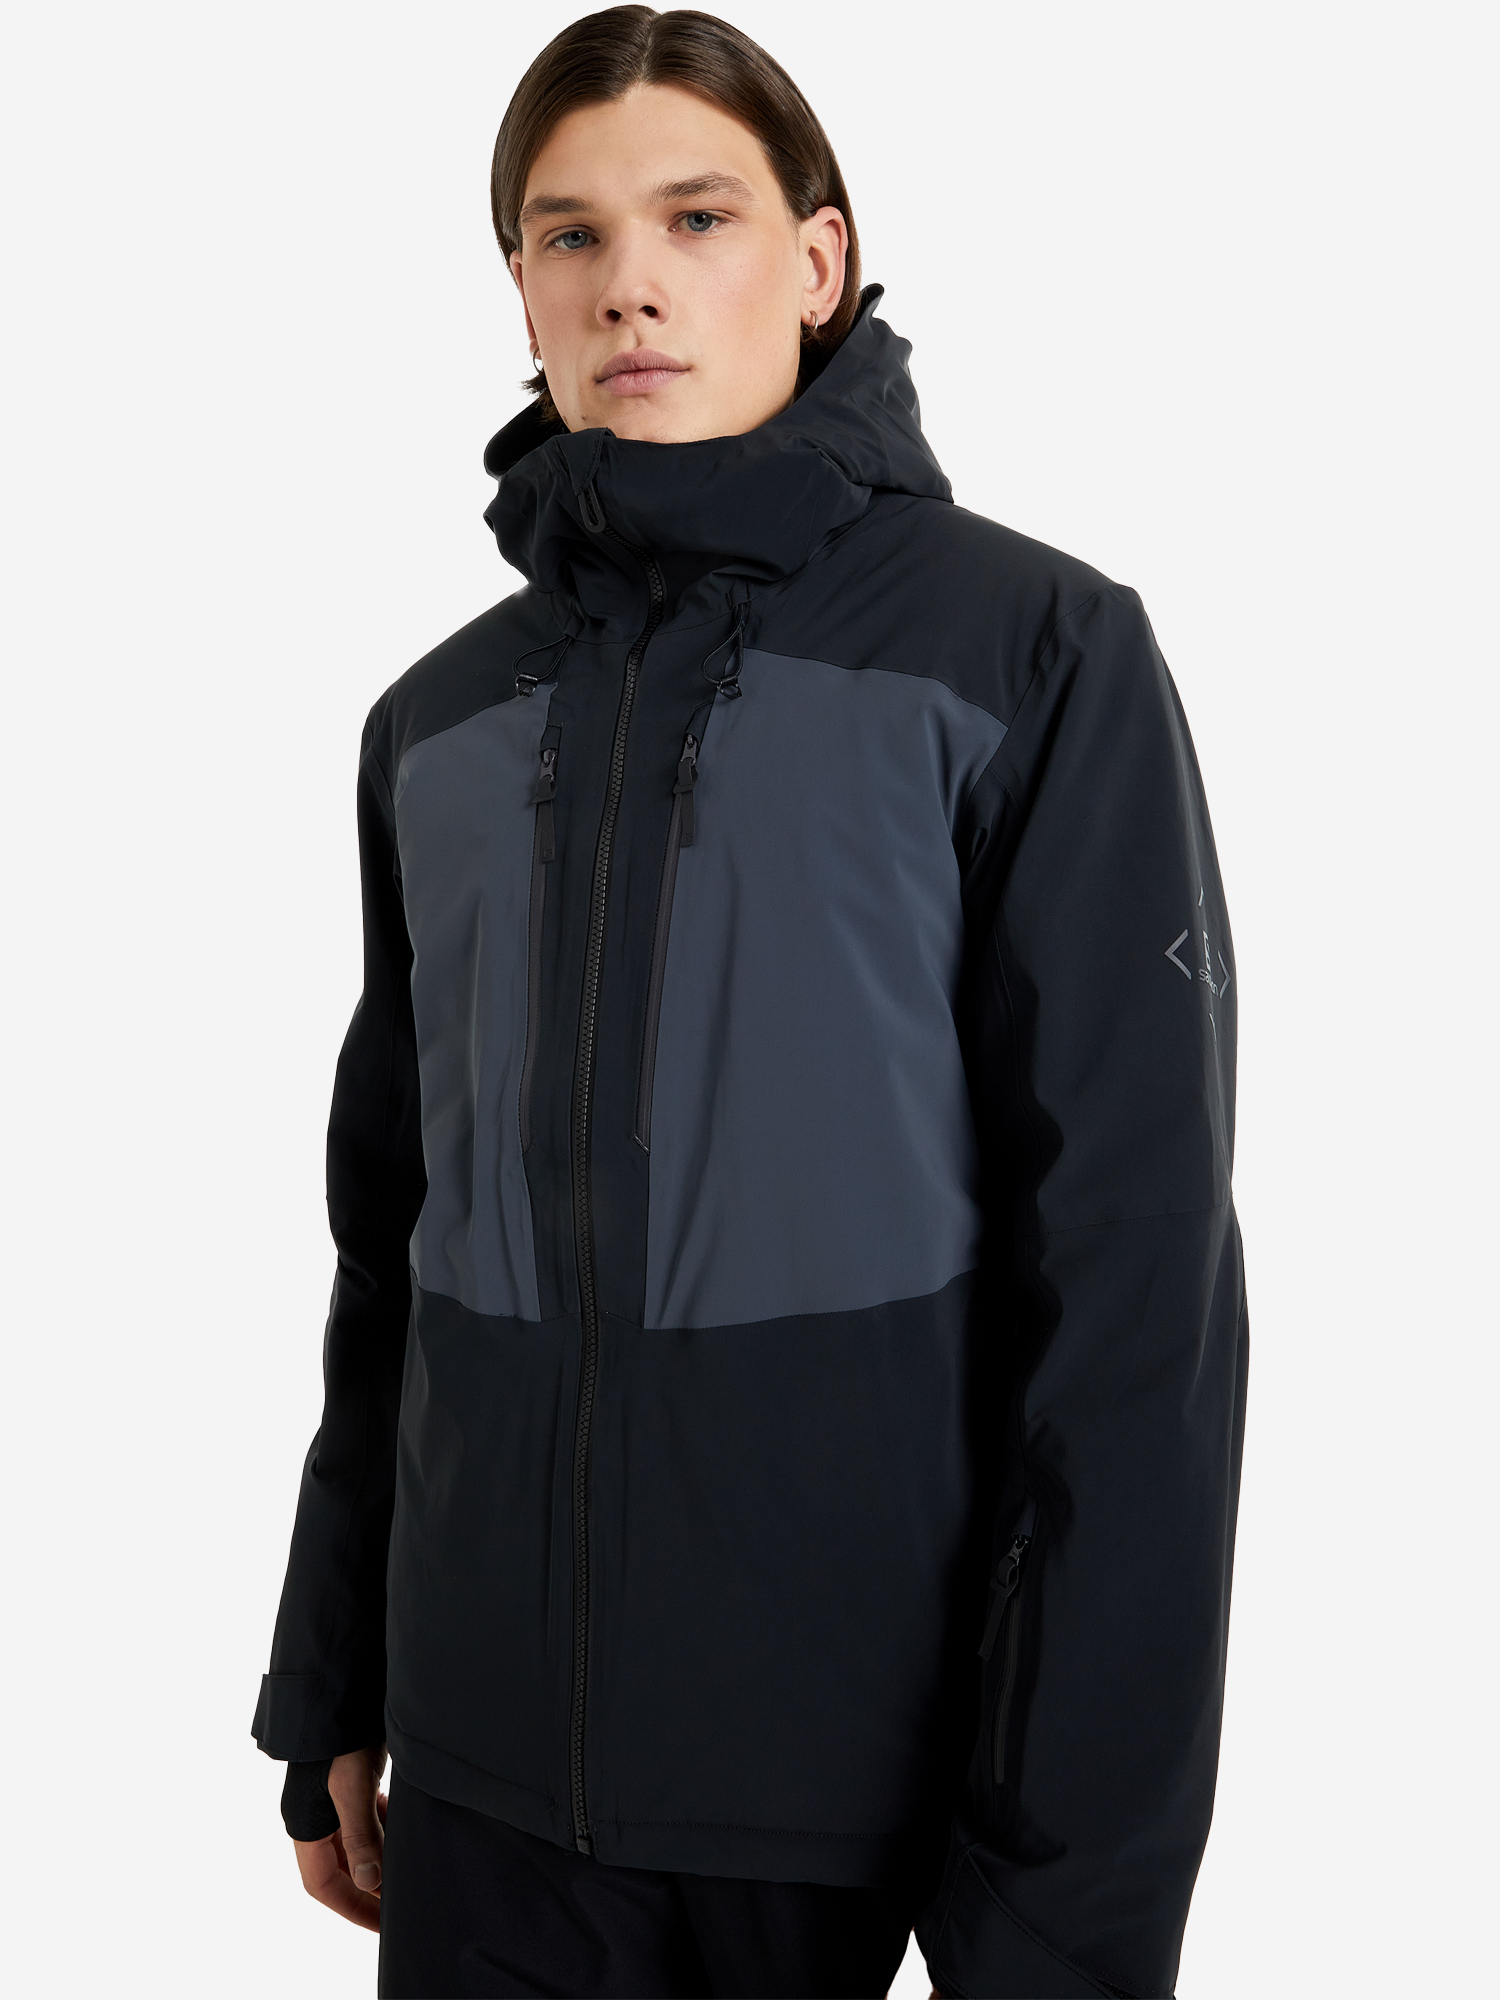 Куртка утепленная мужская Salomon Highland, Черный куртка утепленная мужская salomon highland